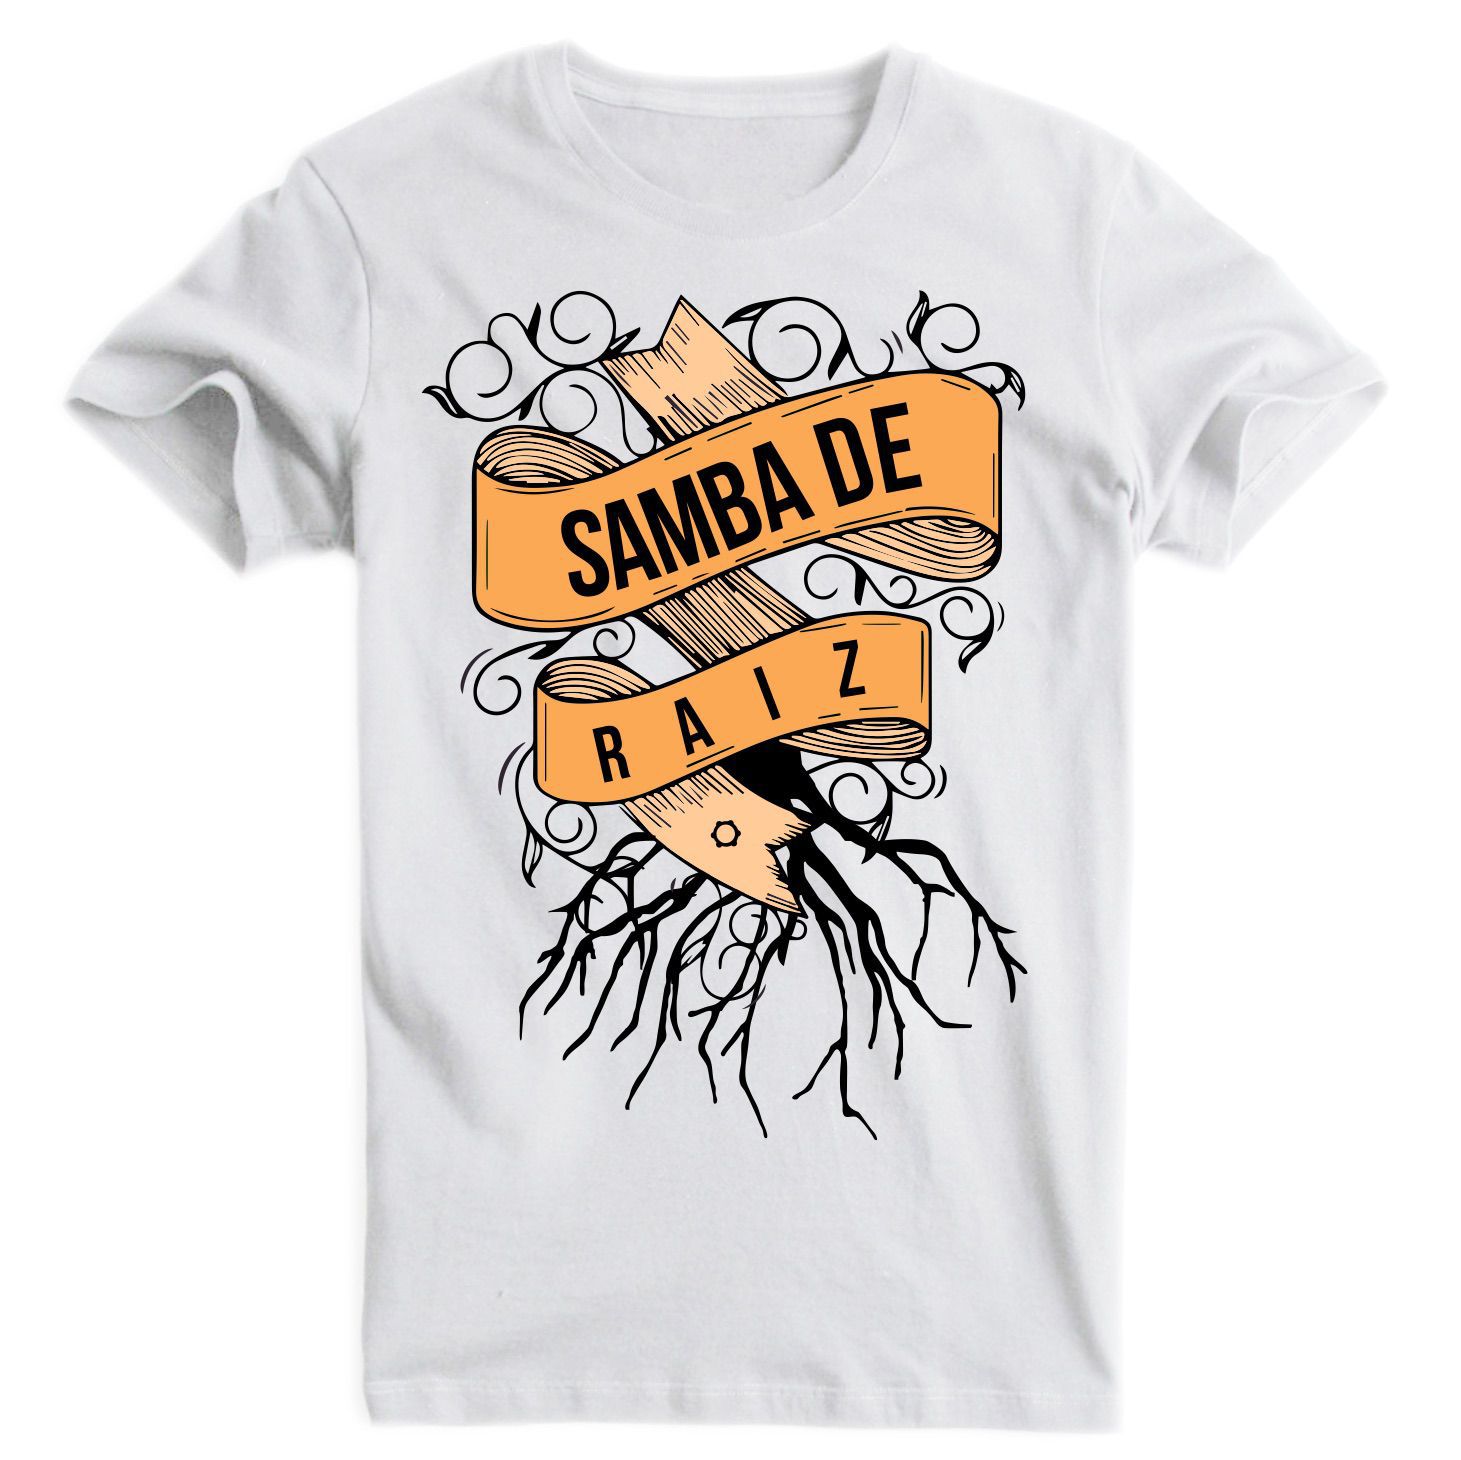 camisa, camiseta, t-shirt, masculino, dsamba, samba, sambista